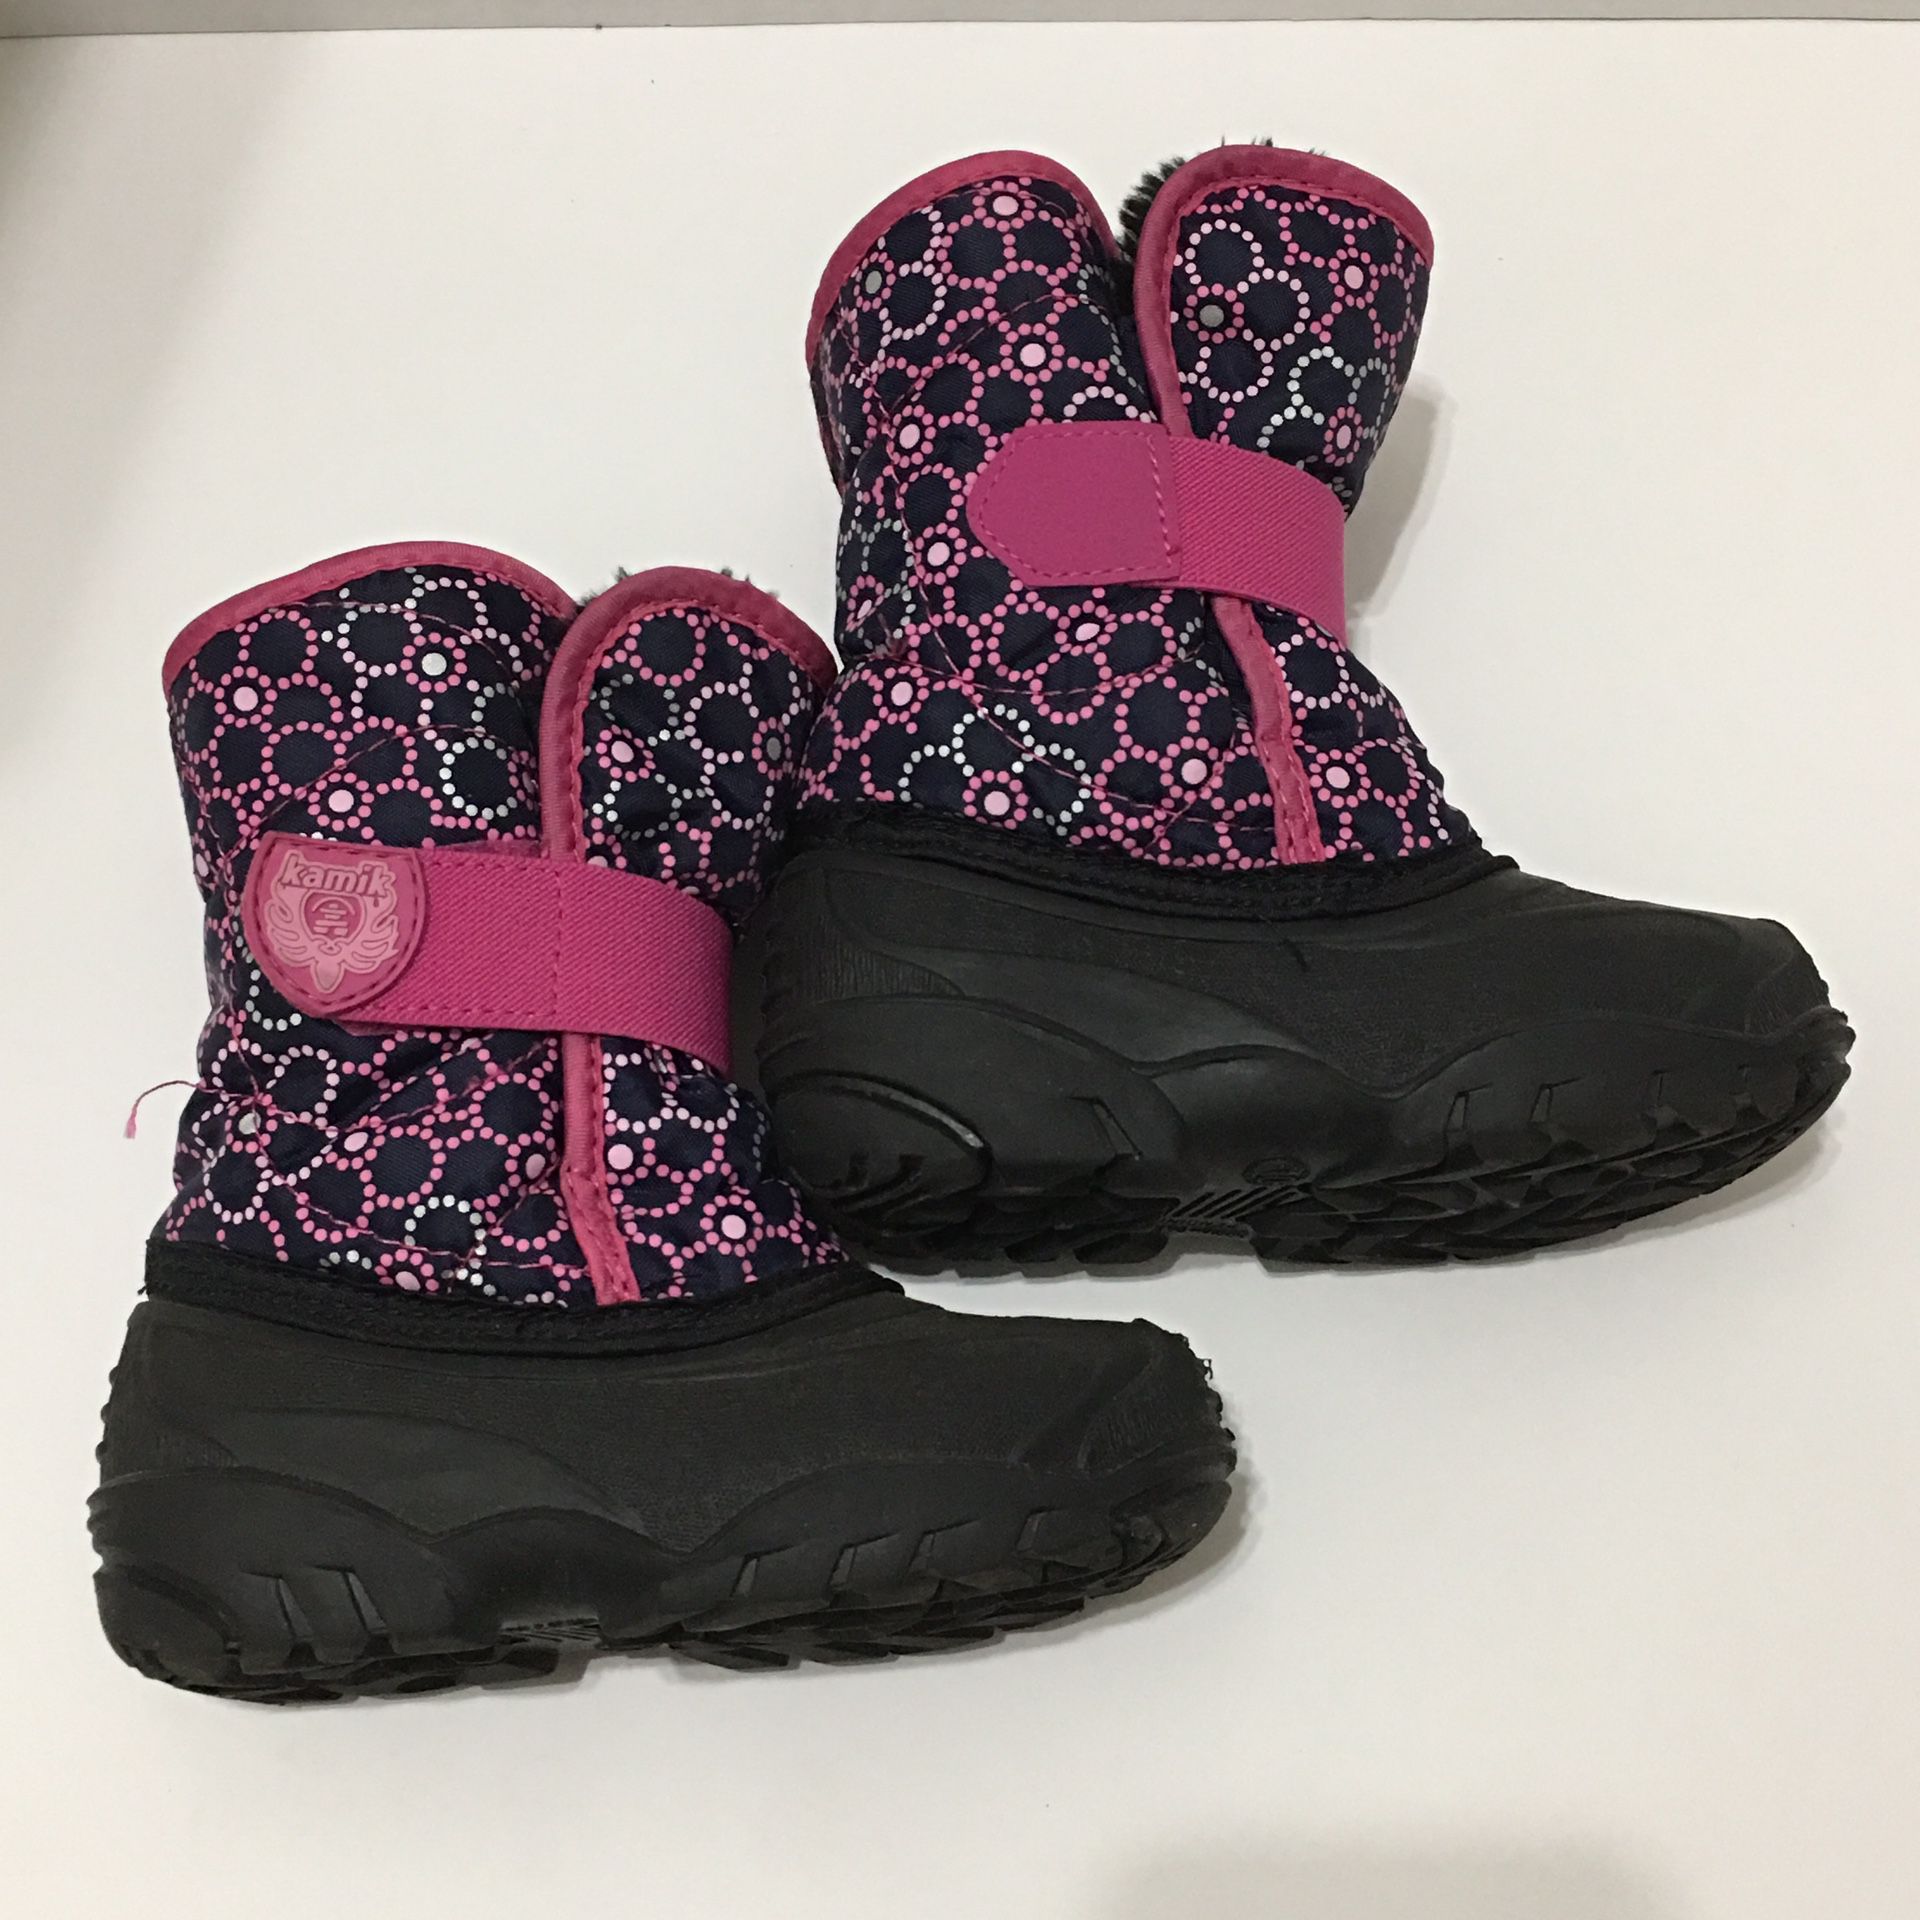 Kamik Toddler Girls winter boots sz 10